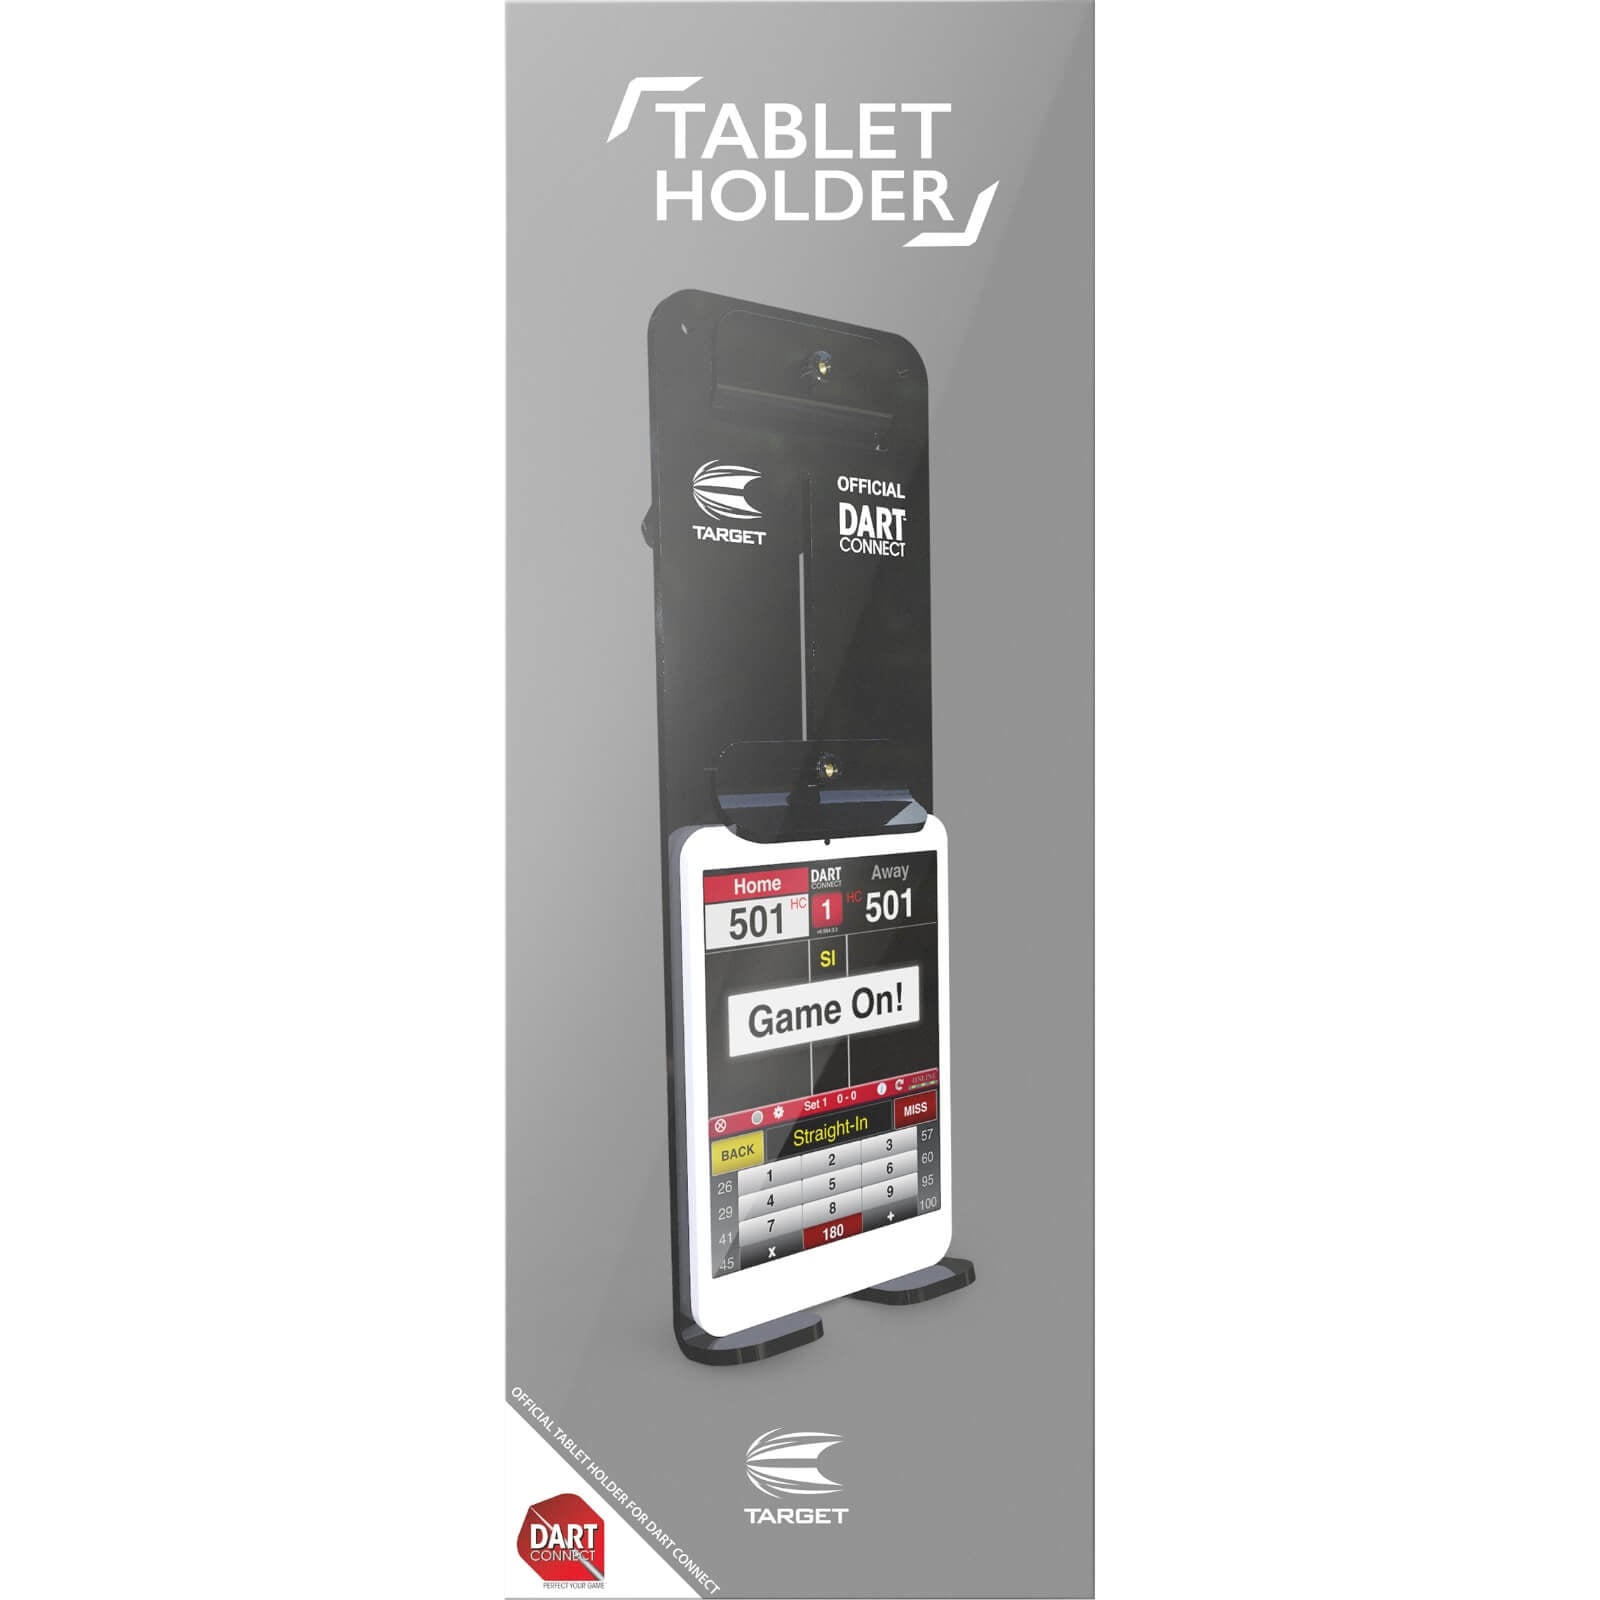 Target Darts Scoring Tablet Holder, Suits Most Tablets